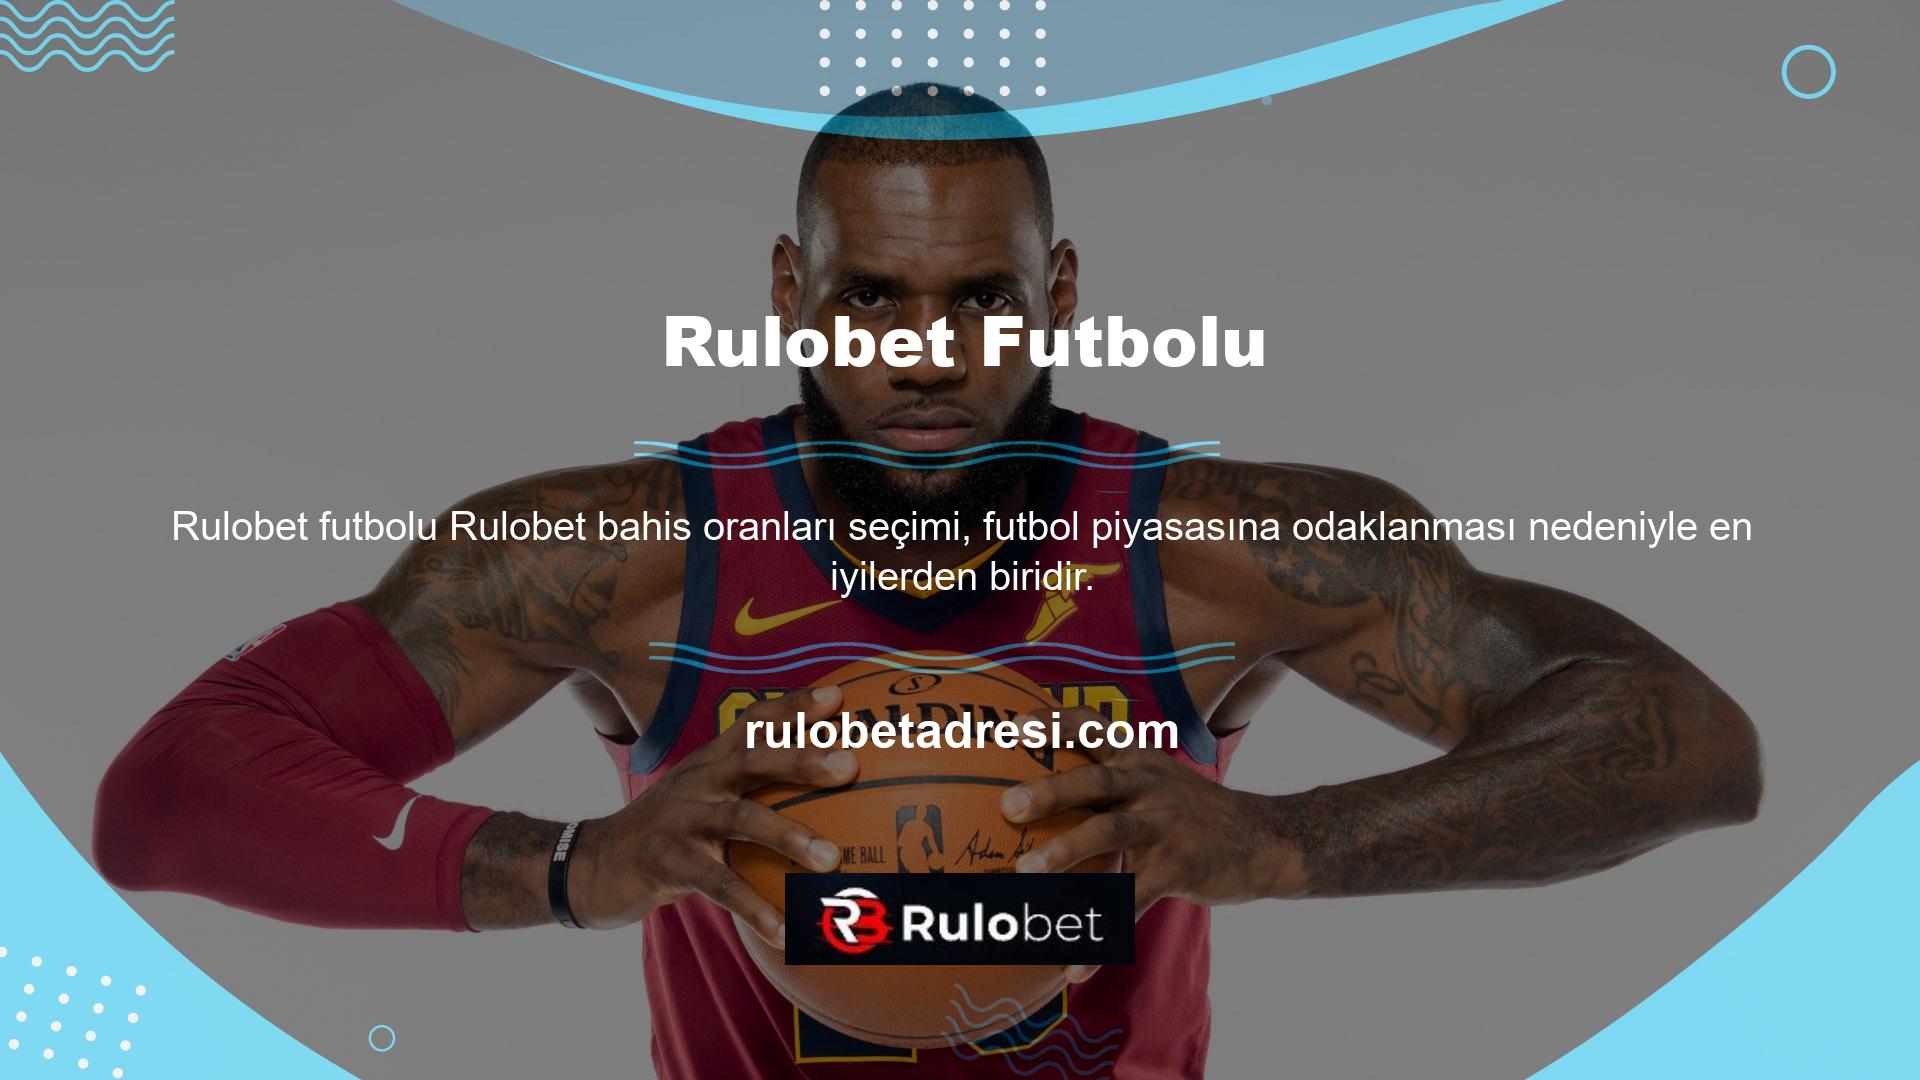 Rulobet online bahis sitesi en iyi veya en şık tasarlanmış sitelerden biridir ve temel içerik açısından diğer sitelerden daha iyi performans göstermektedir